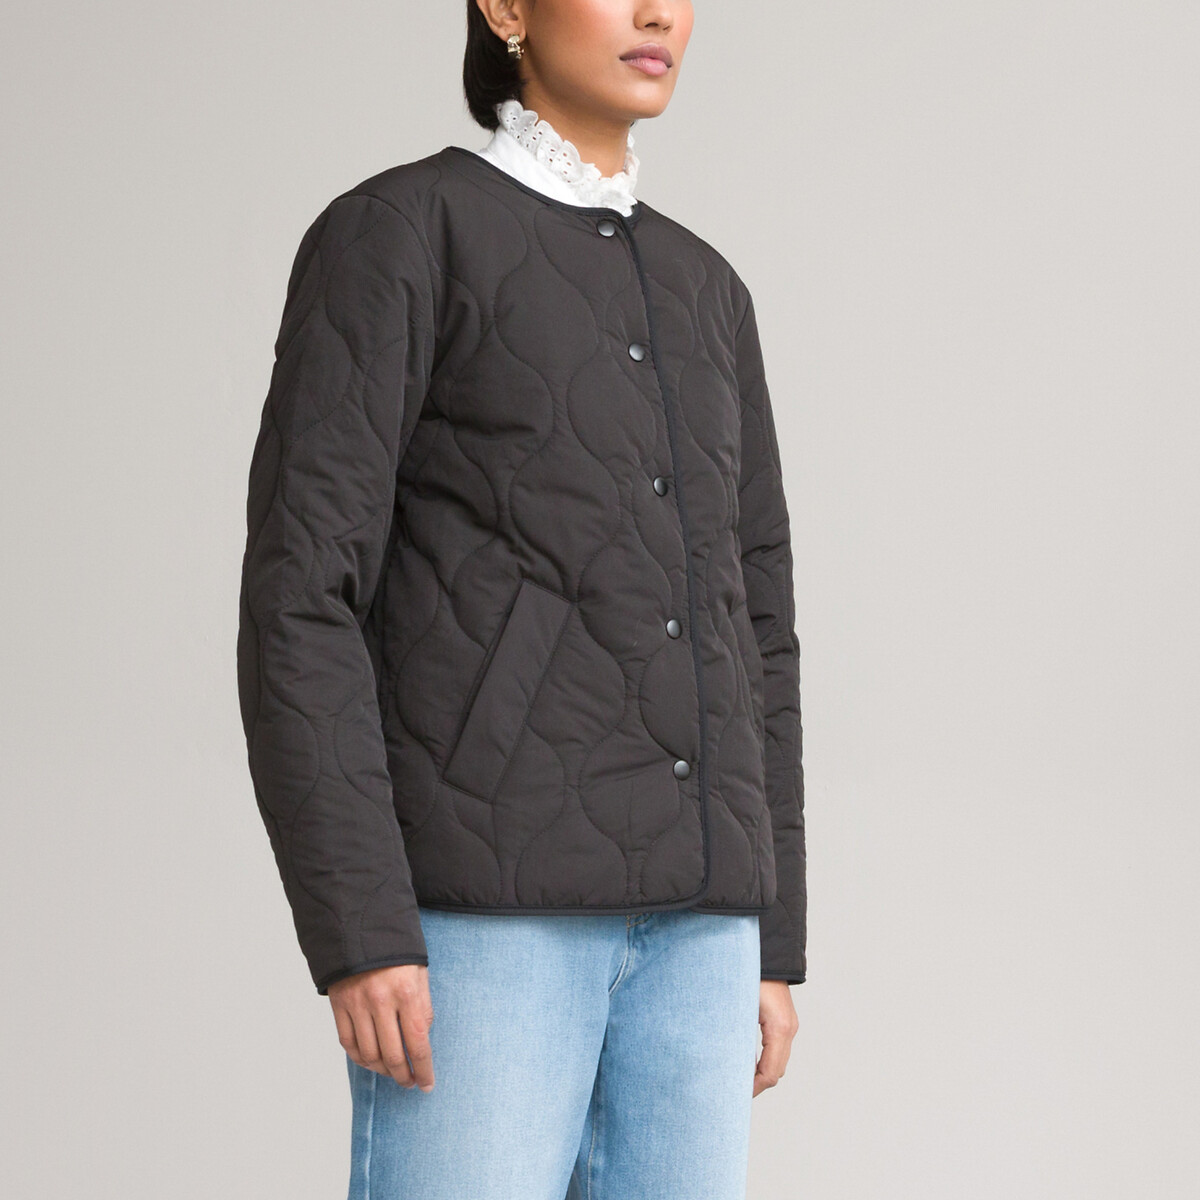 Куртка Стеганая легкая короткая с застежкой на кнопки 42 (FR) - 48 (RUS) черный